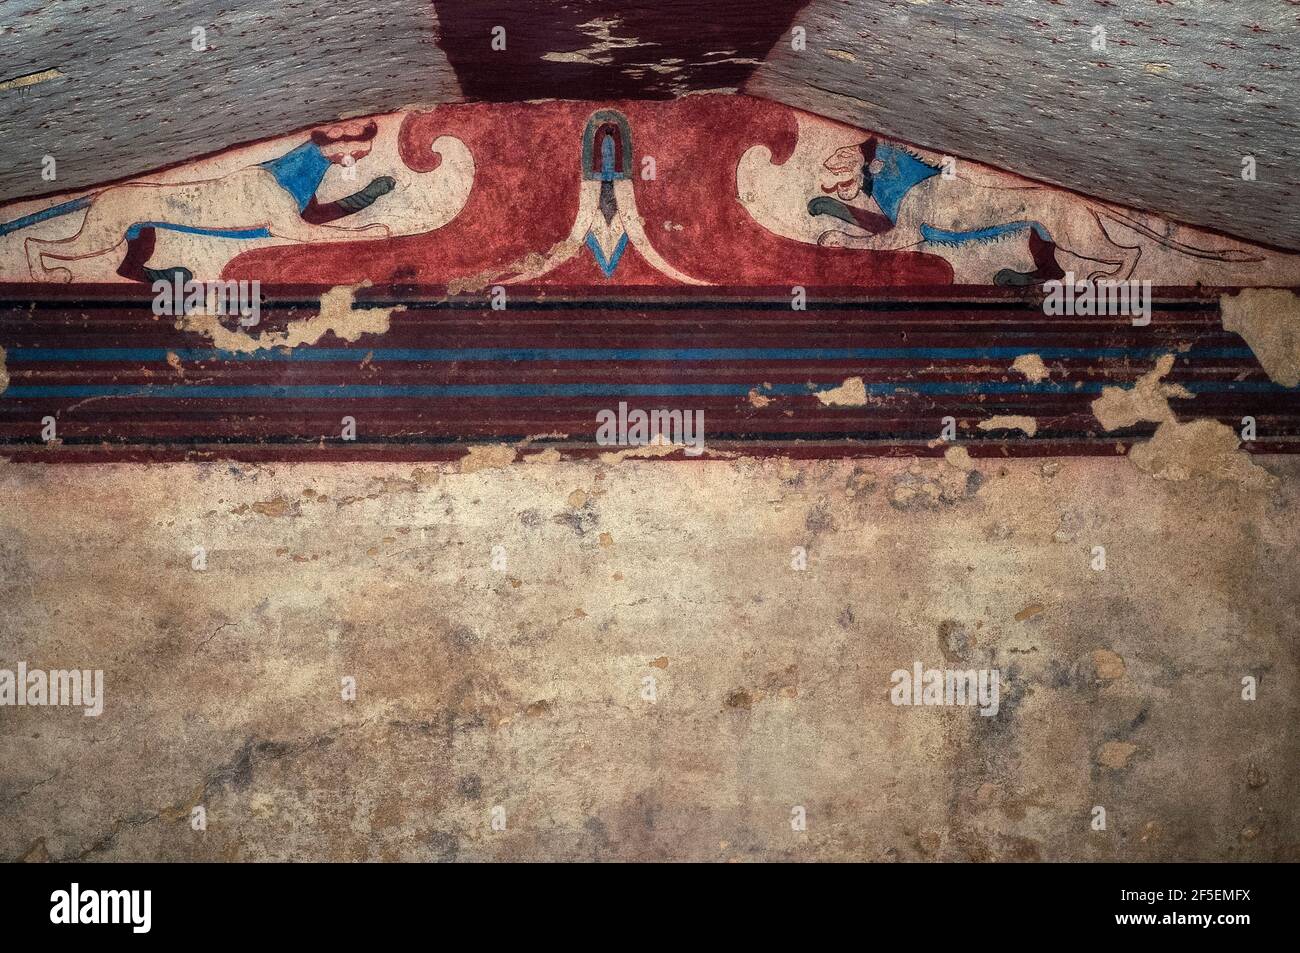 Zwei große Katzen, ein Panther (links) und ein Löwe (rechts), beide in unnatürlichem hellblau gefärbt, stehen auf beiden Seiten eines zentralen Trägers und einer umgekehrten Lotusblüte unter dem Dach des Grabes der Lotusblume in der Monterozzi-Nekropole der antiken etruskischen Tarchuna oder Tarchna. Die 1962 entdeckte Kammer stammt aus der Zeit um 520 v. Chr. und gehört zu den 200 Gräbern der Adligen oder Adligen des Stadtstaates, die mit Fresken geschmückt werden. Einige andere bemalte Gräber zeigen das alltägliche etruskische Leben, einschließlich Bankette mit Musik und Tanz, Jagd, Leichtathletik und Beerdigungsrituale. Stockfoto